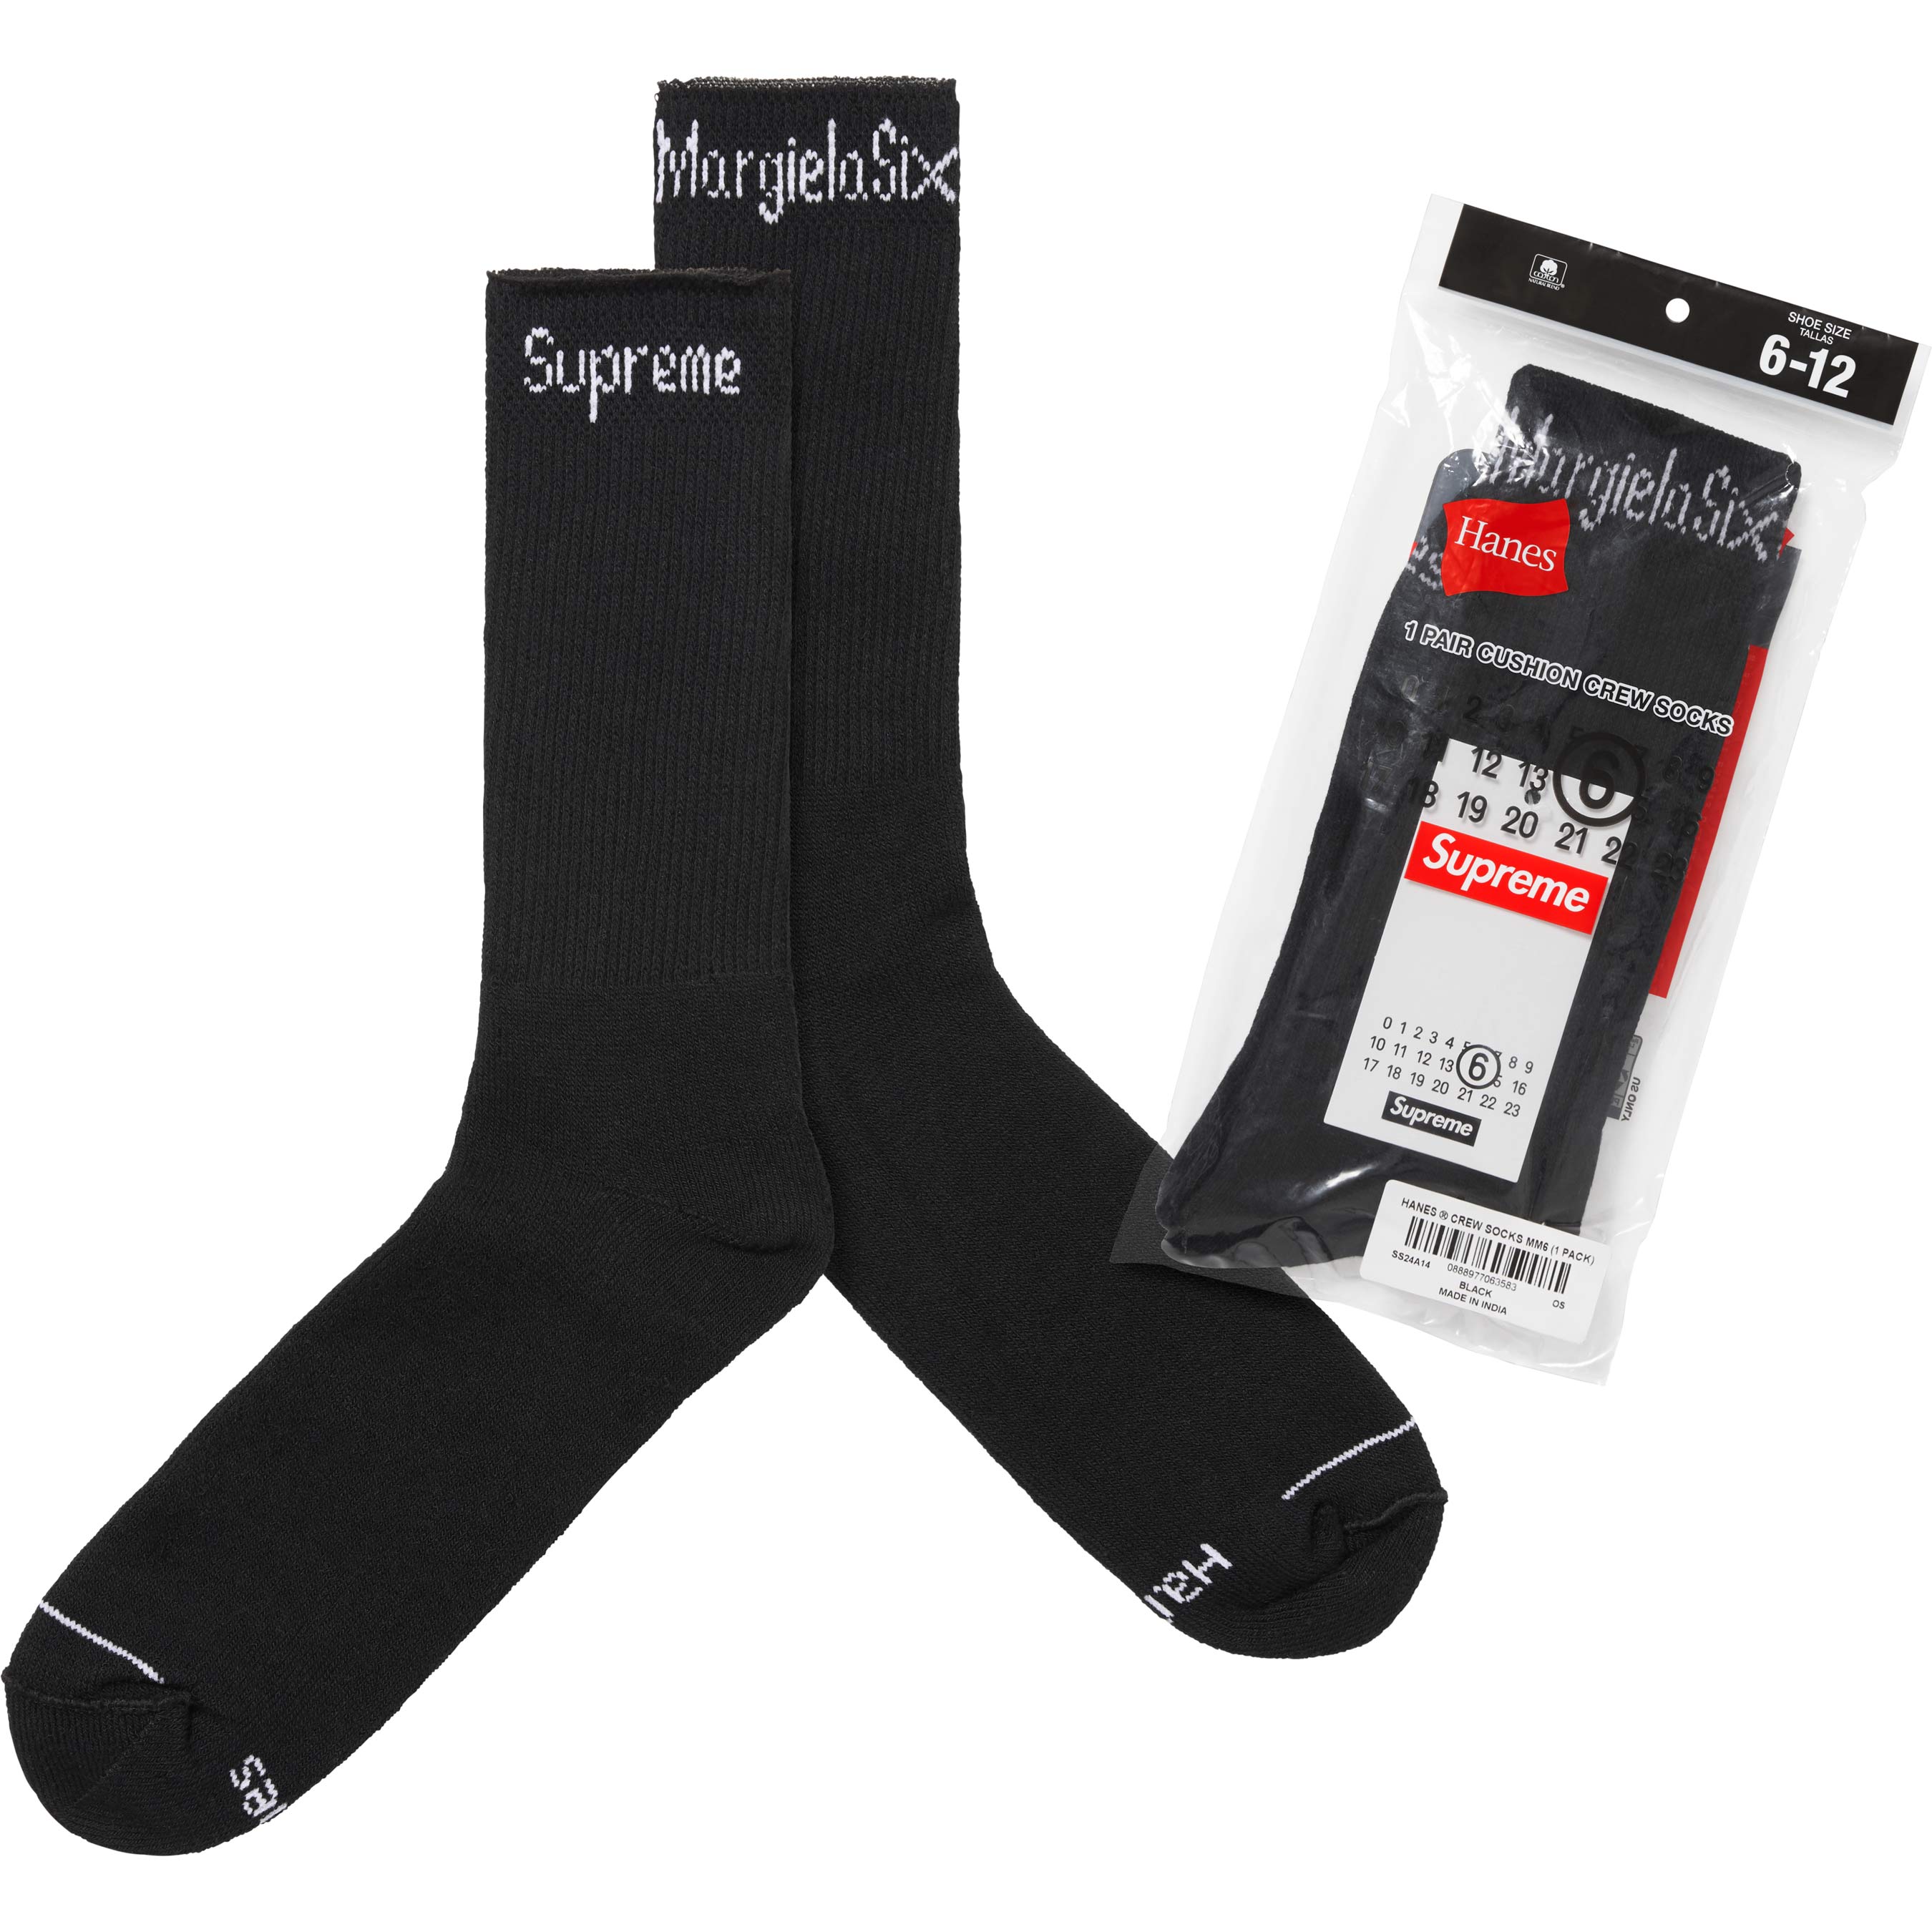 Supreme x Maison Margiela Socks 